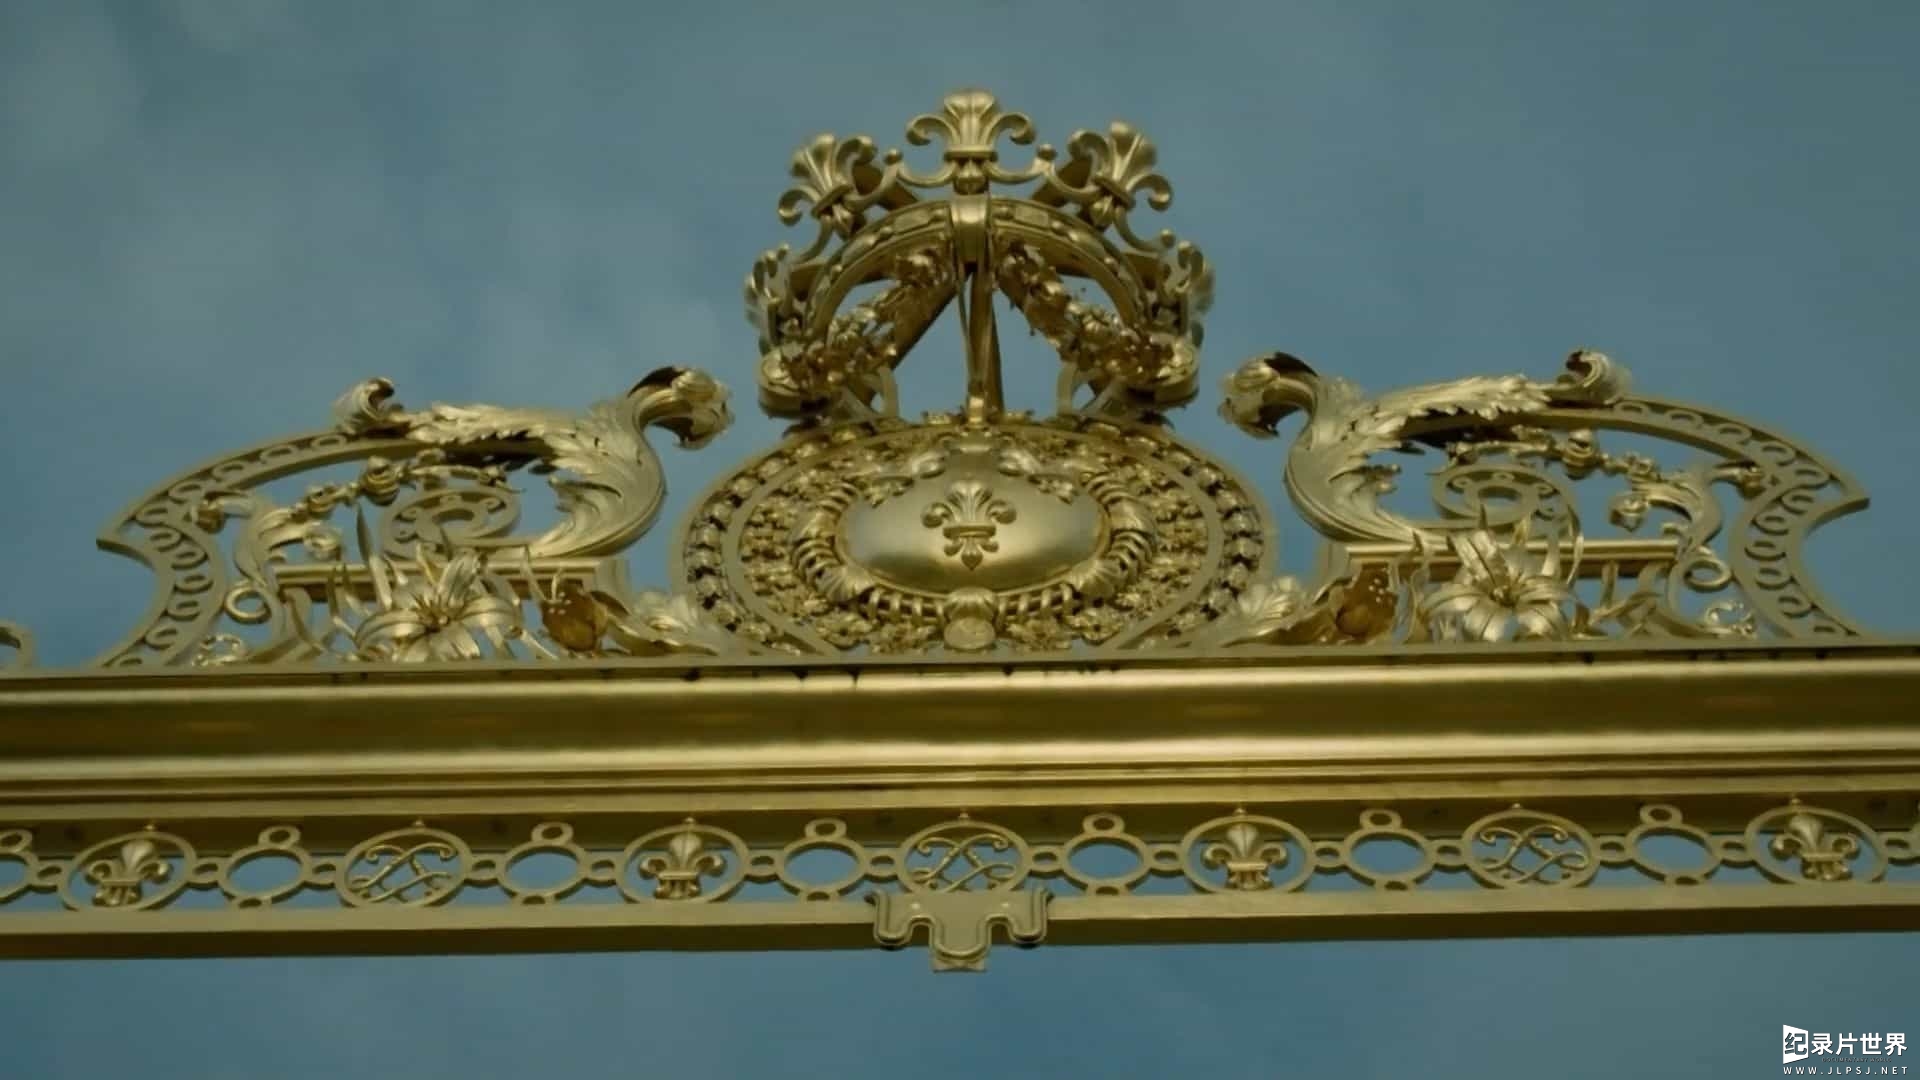 经典纪录片/BBC纪录片《真实的凡尔赛 The Real Versailles》英语中英双字